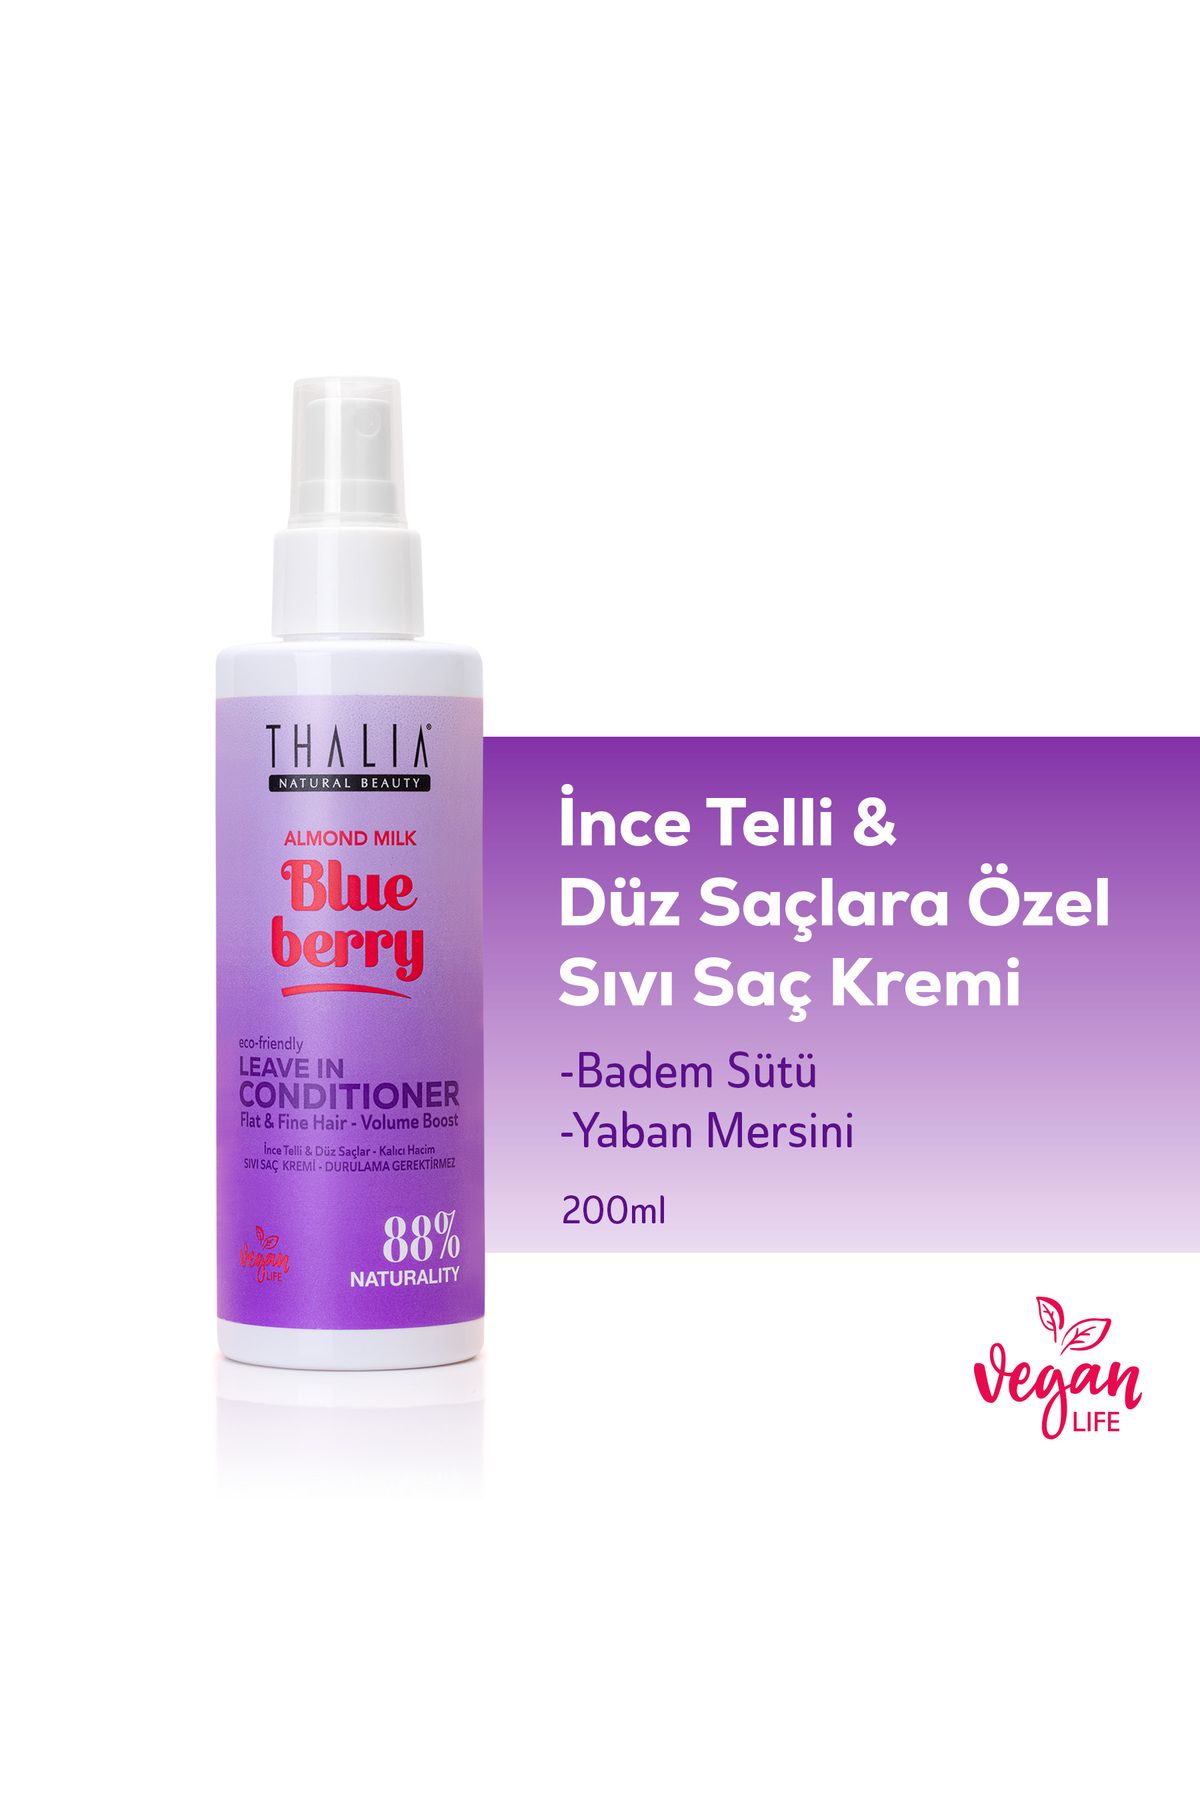 Thalia Badem Sütü & Yaban Mersini Özlü İnce Telli & Düz Saçlar Sıvı Saç Kremi 200ml